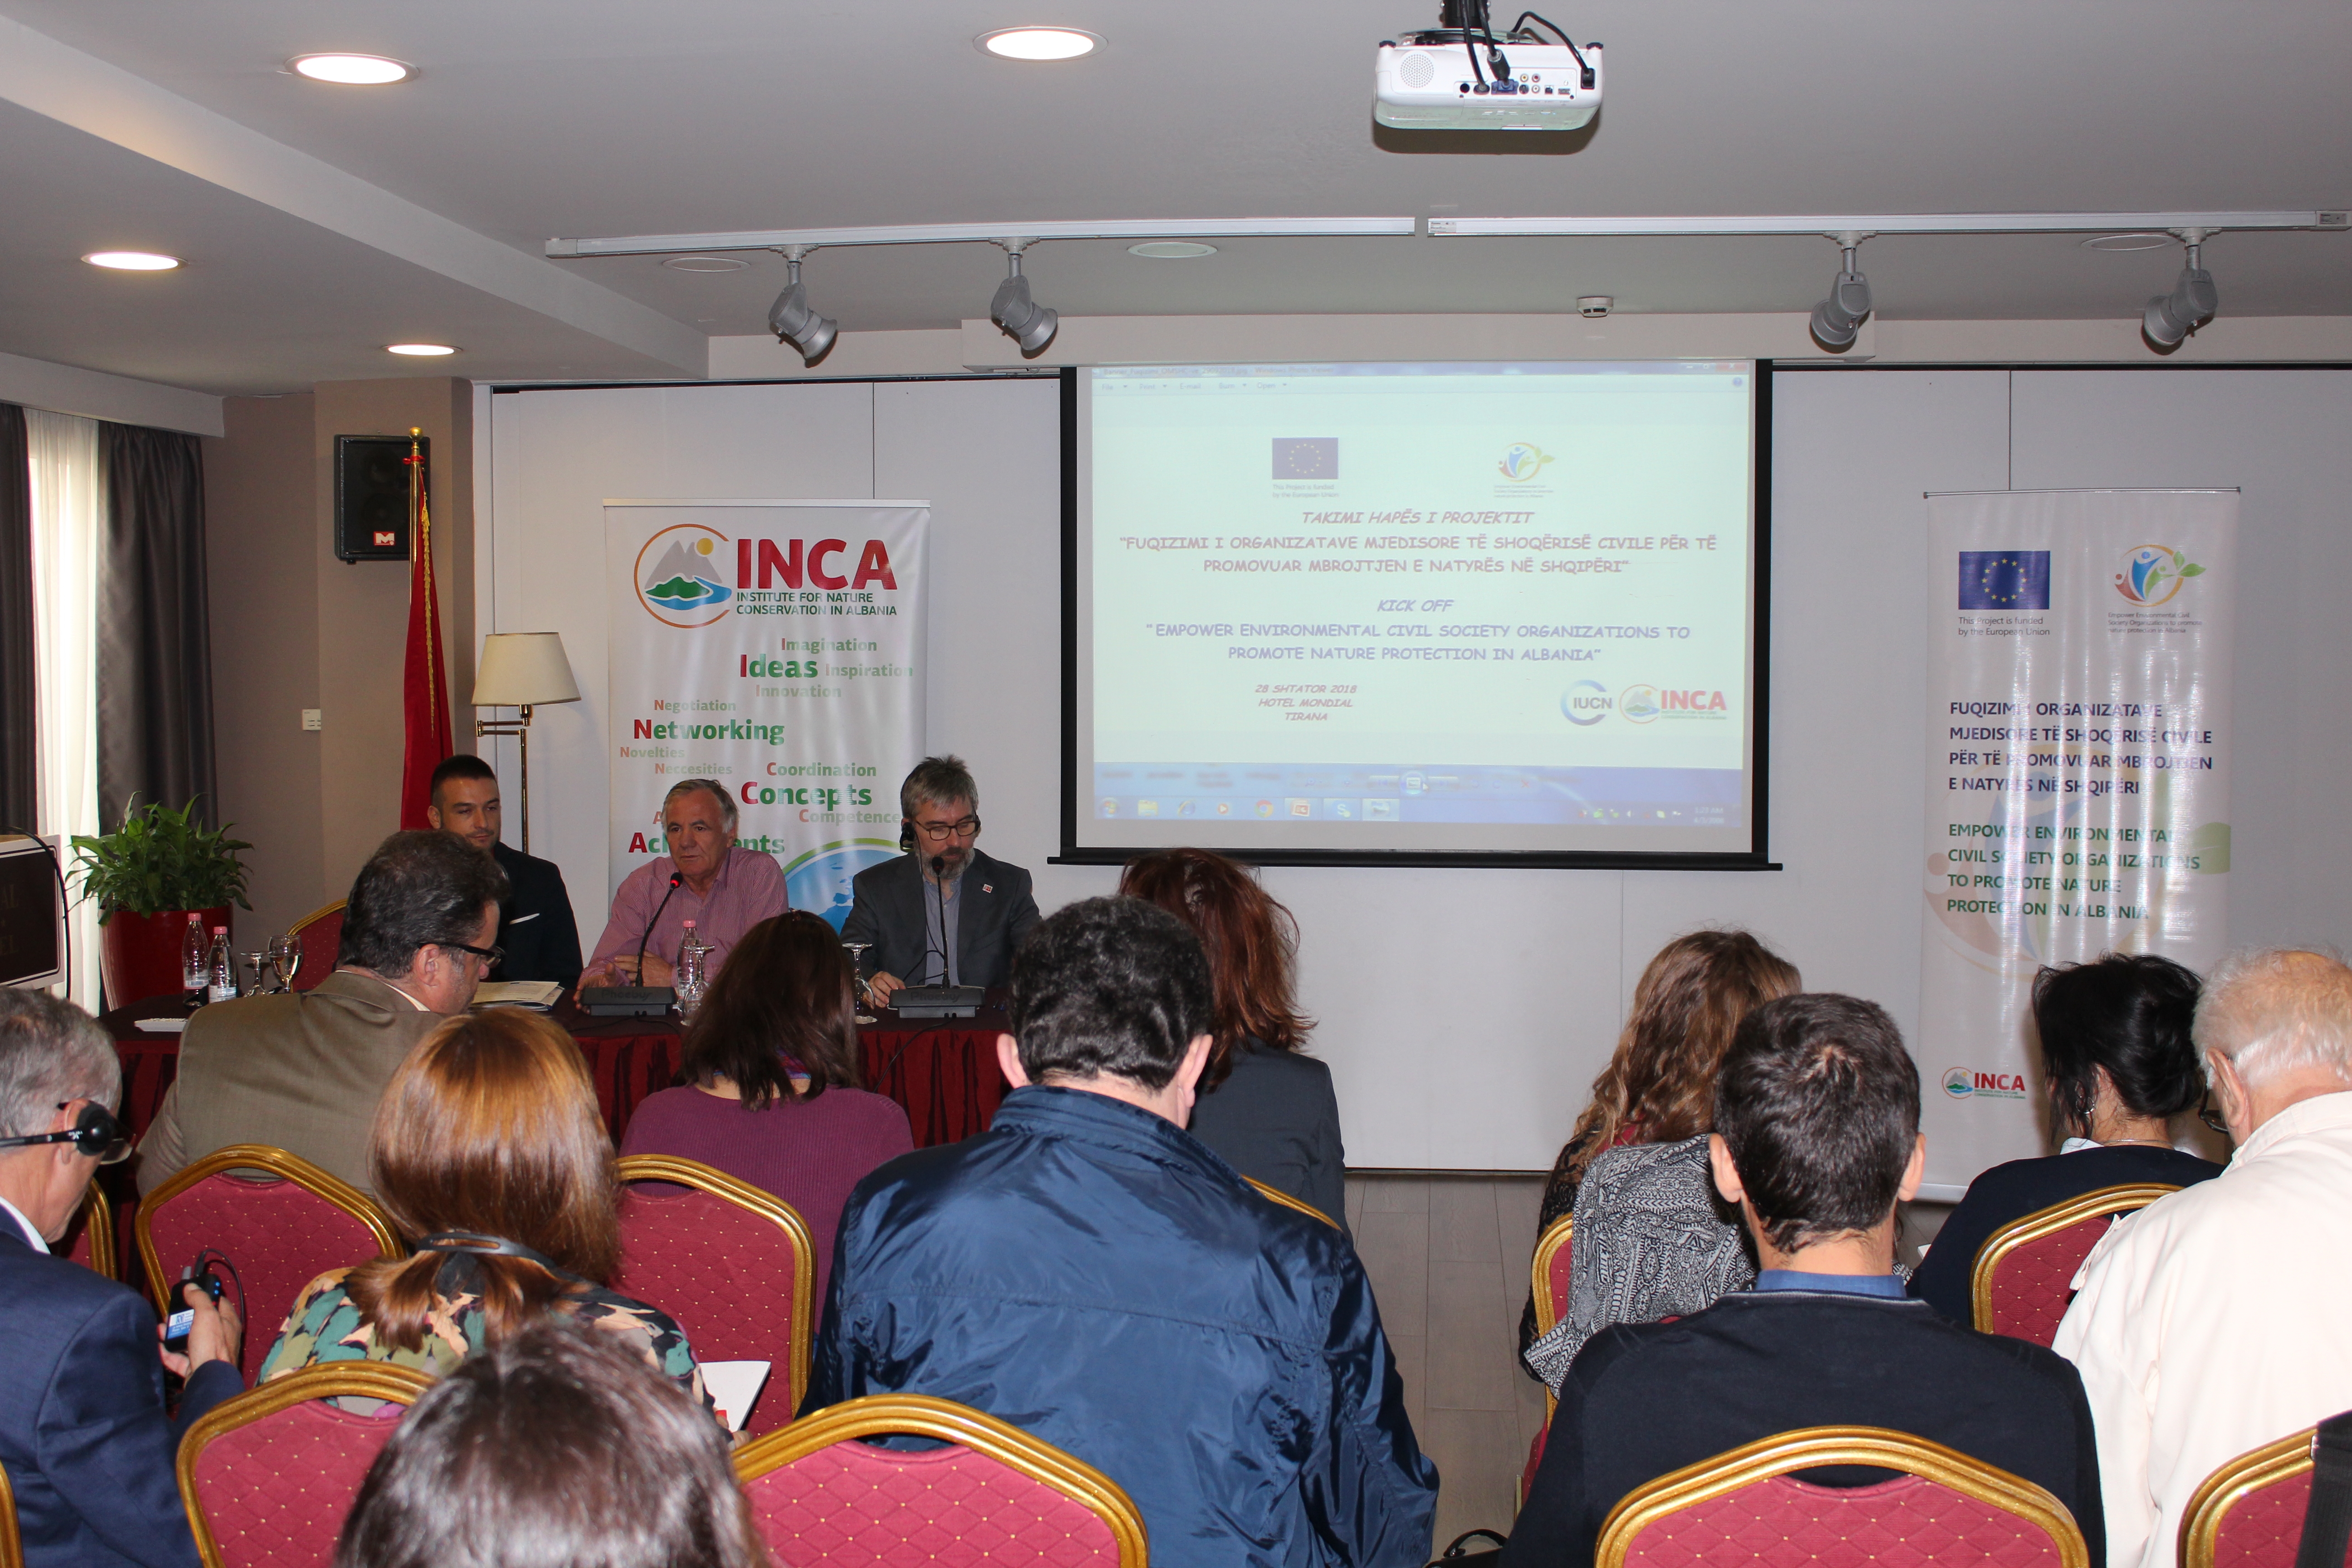 Fuqizimi i OMSHC-ve për të promovuar mbrojtjen e natyrës në Shqipëri